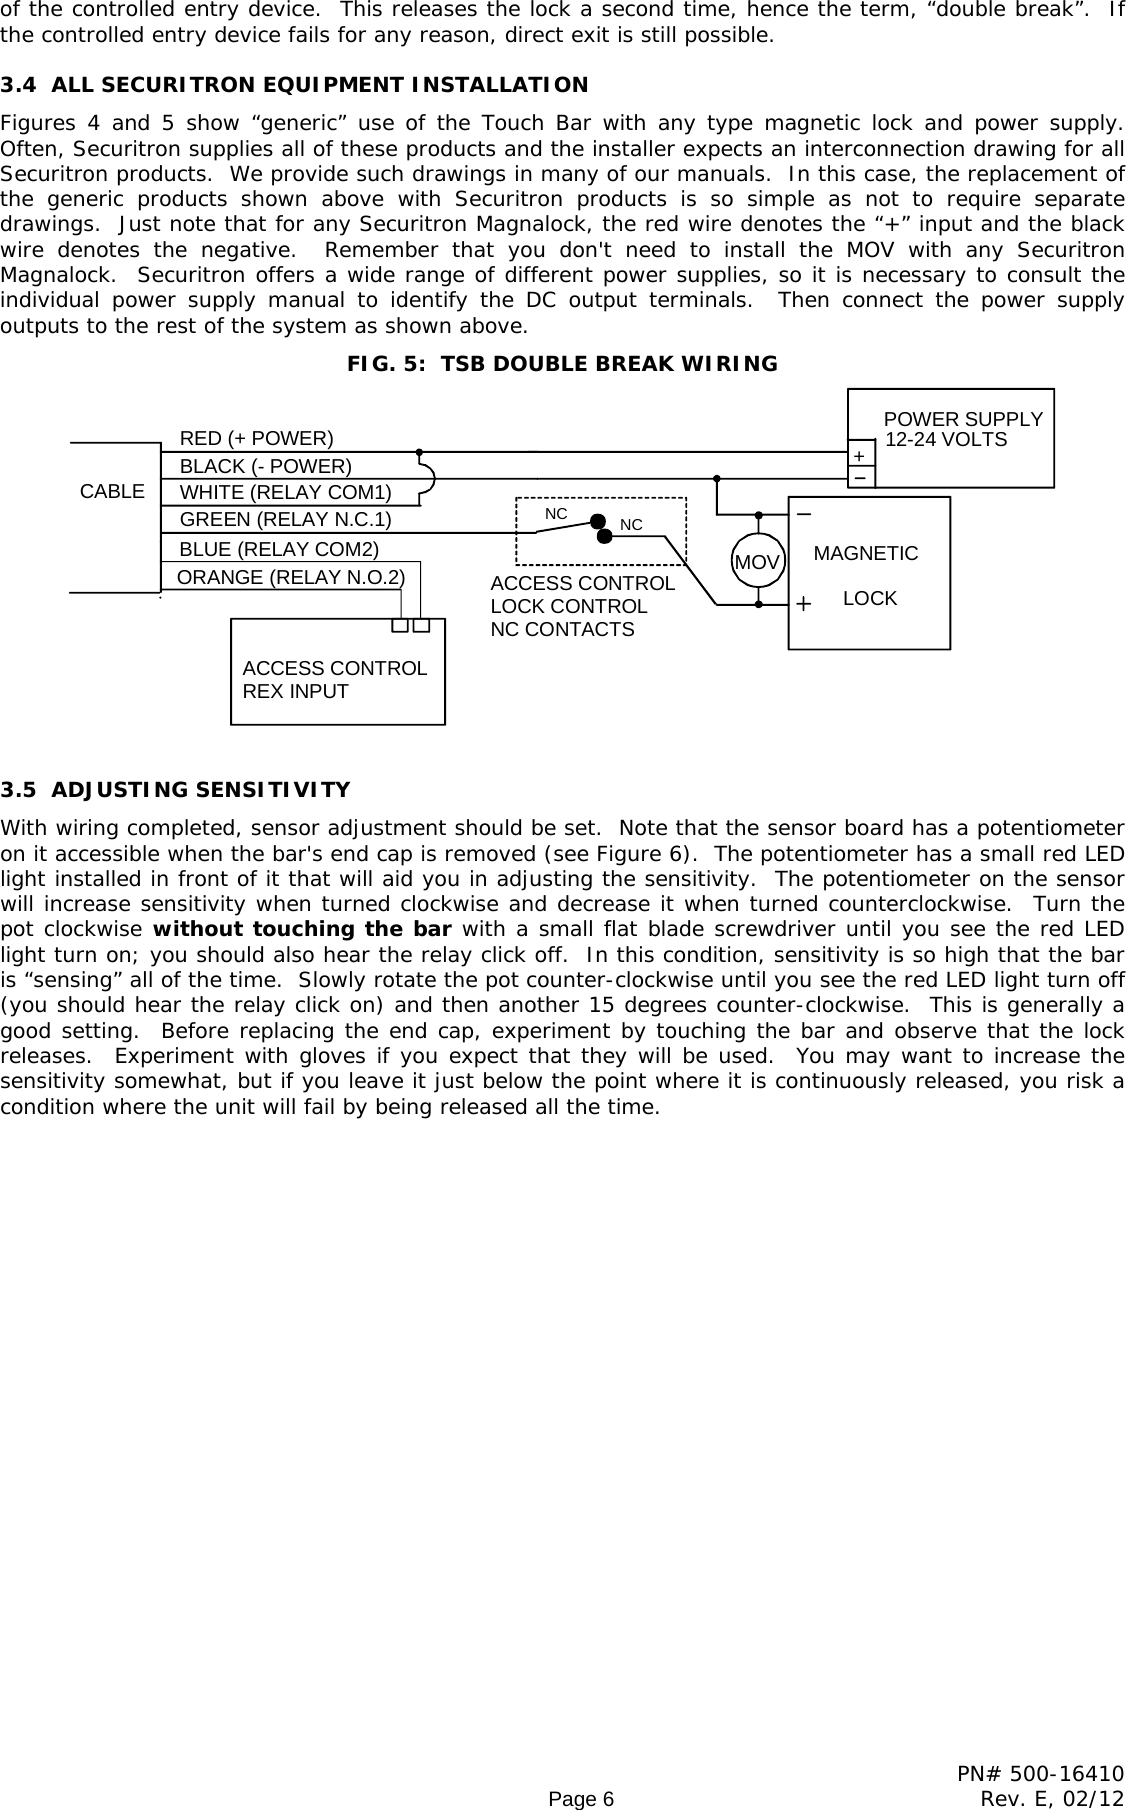 Page 6 of 10 - Securitron - TSB SERIES TS5 Pcb 500-16410_E Installation And Operation Instructions 20SERIES 20 20TS5 20pcb 20500-16410 E